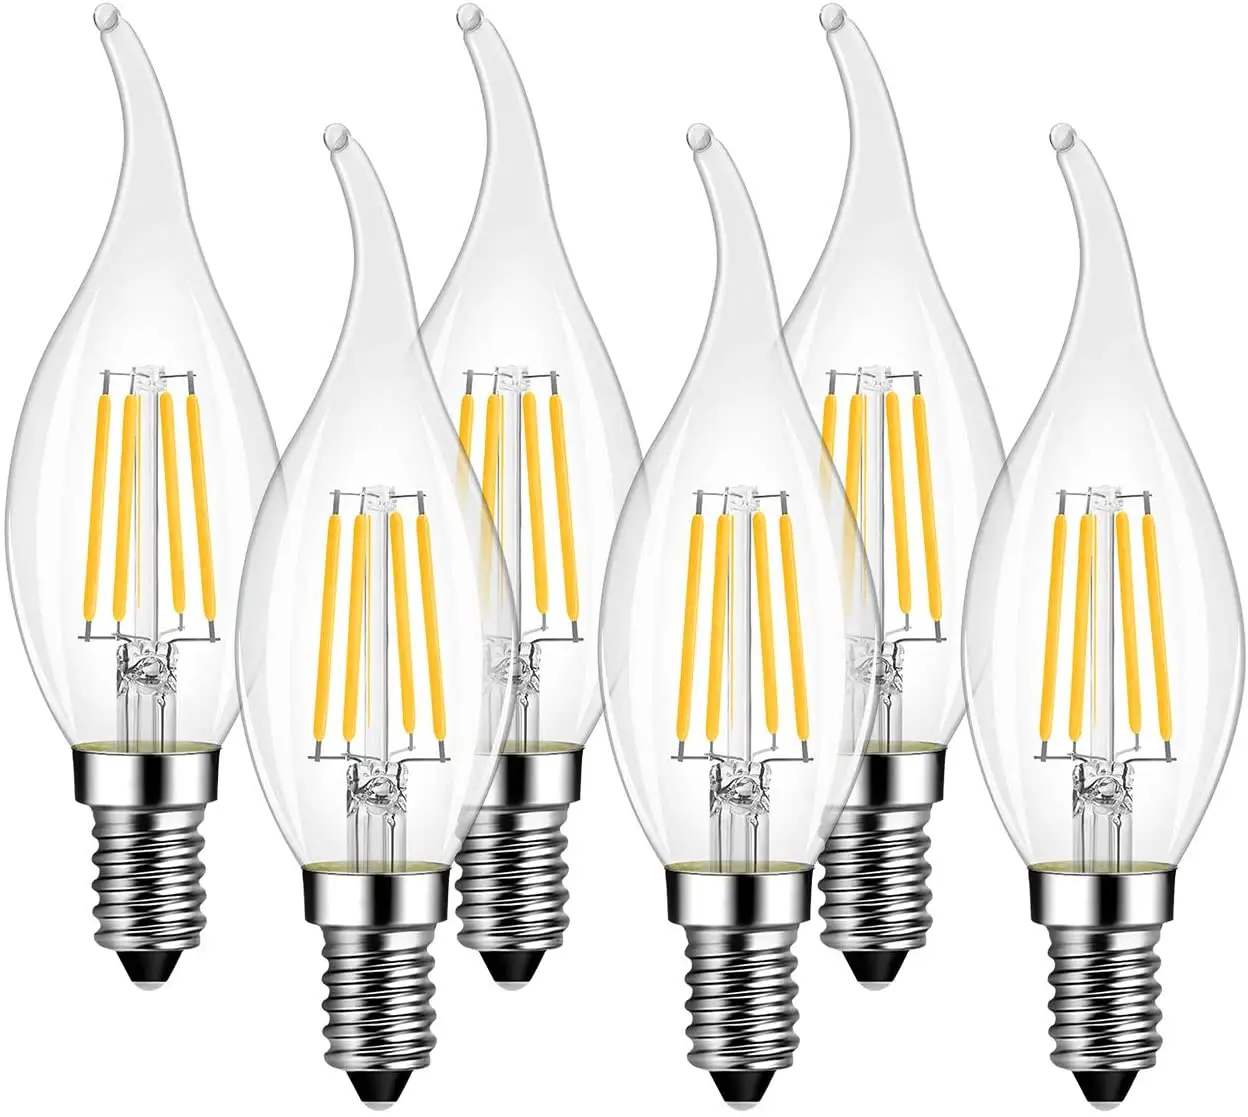 Candela LED Vintage Edison filamento lampadina E14 E27 2w 4w 5w C35 C37 per illuminazione interna